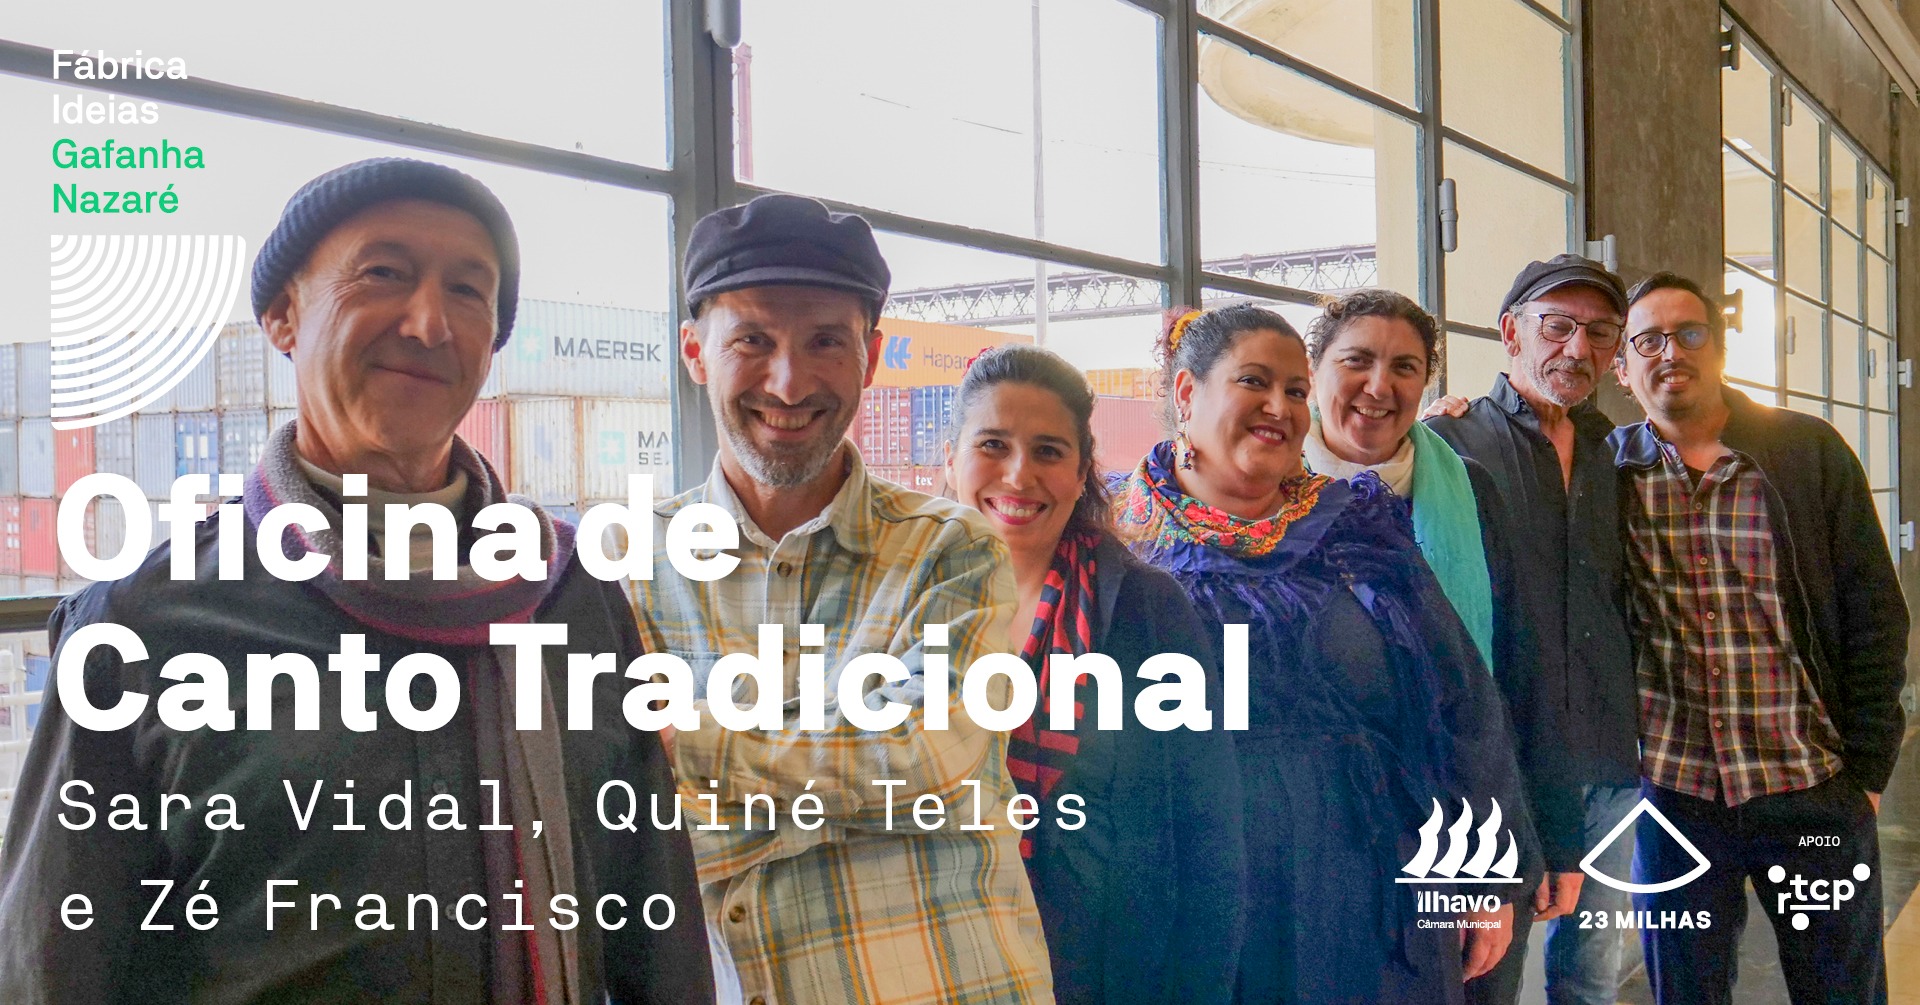 Oficina de Canto Tradicional — Sara Vidal, Quiné Teles e Zé Francisco